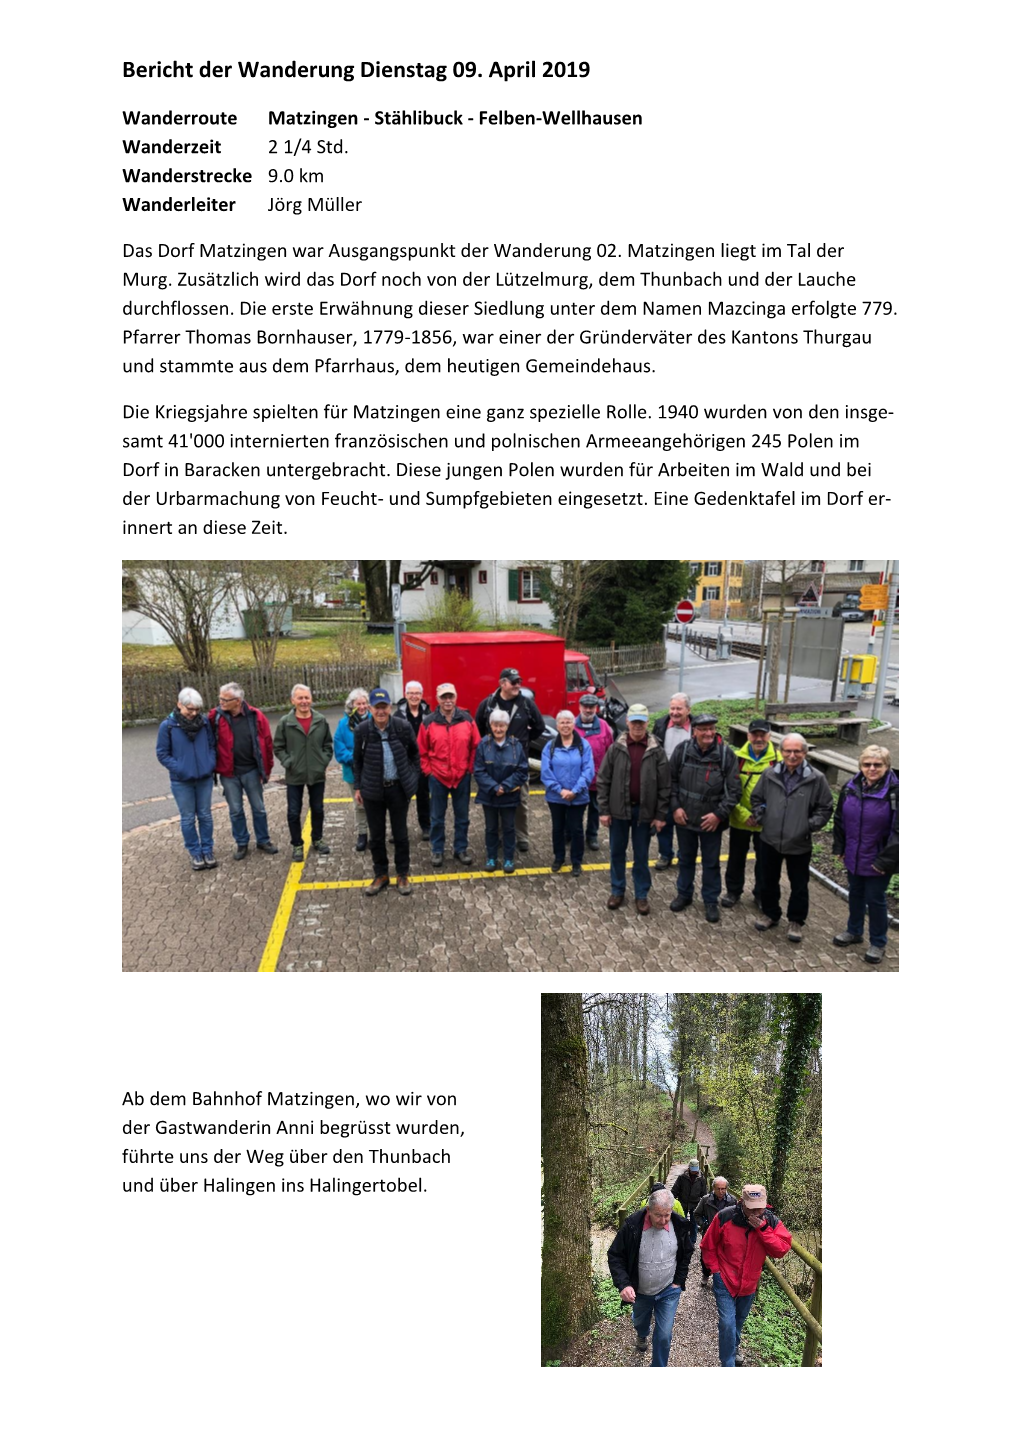 RB 02-19 Wanderung Von Matzingen Nach Felben-Wellhausen,09.04.19.Pdf